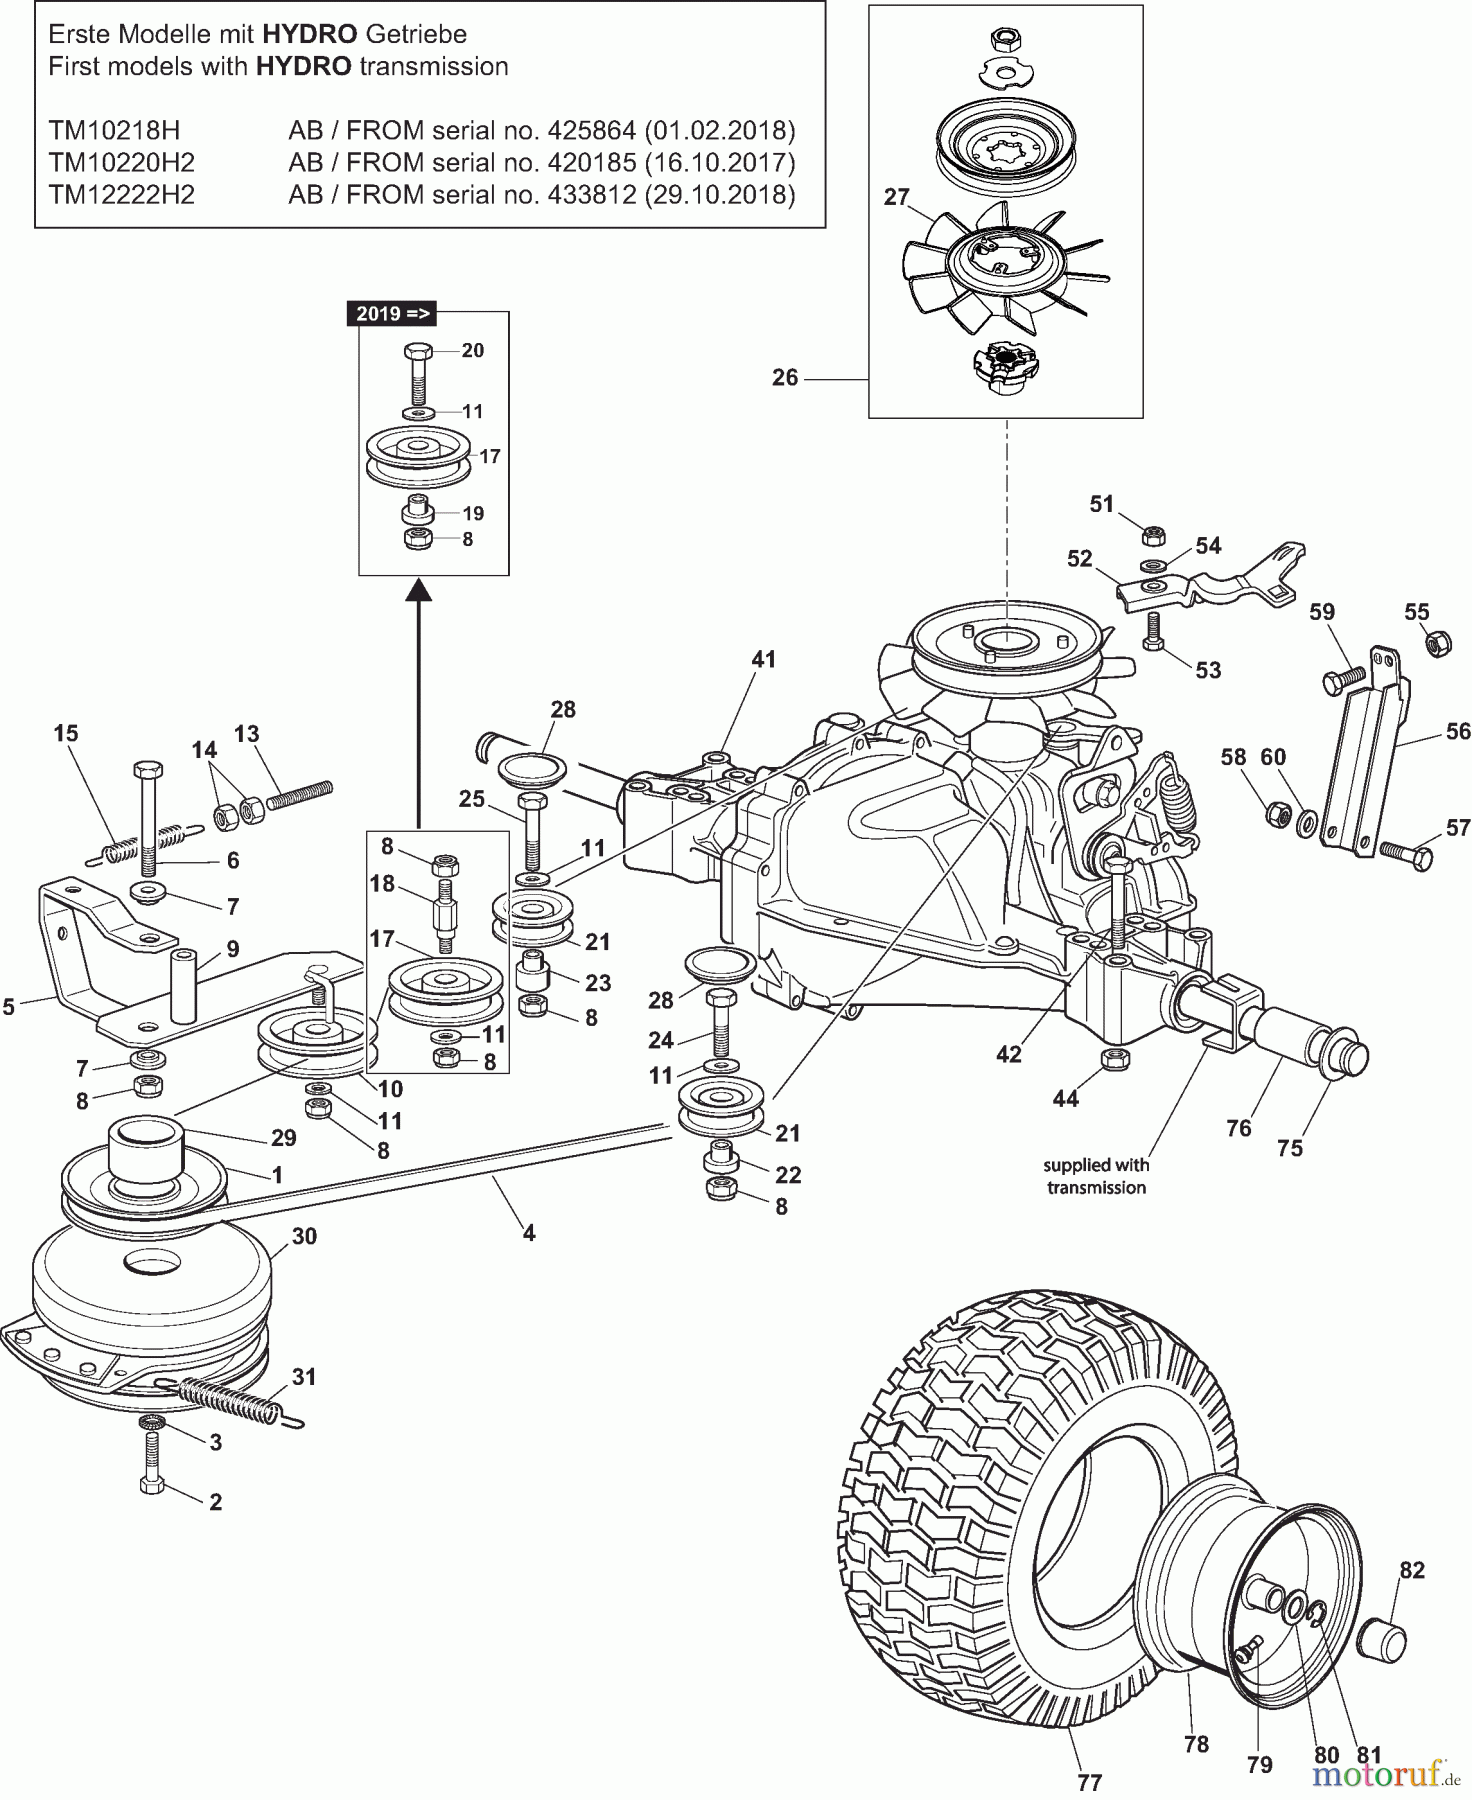  Dolmar Rasentraktoren TM12222H2 TM12222H2 (2015-2019) 6ya  Getriebe HYDRO